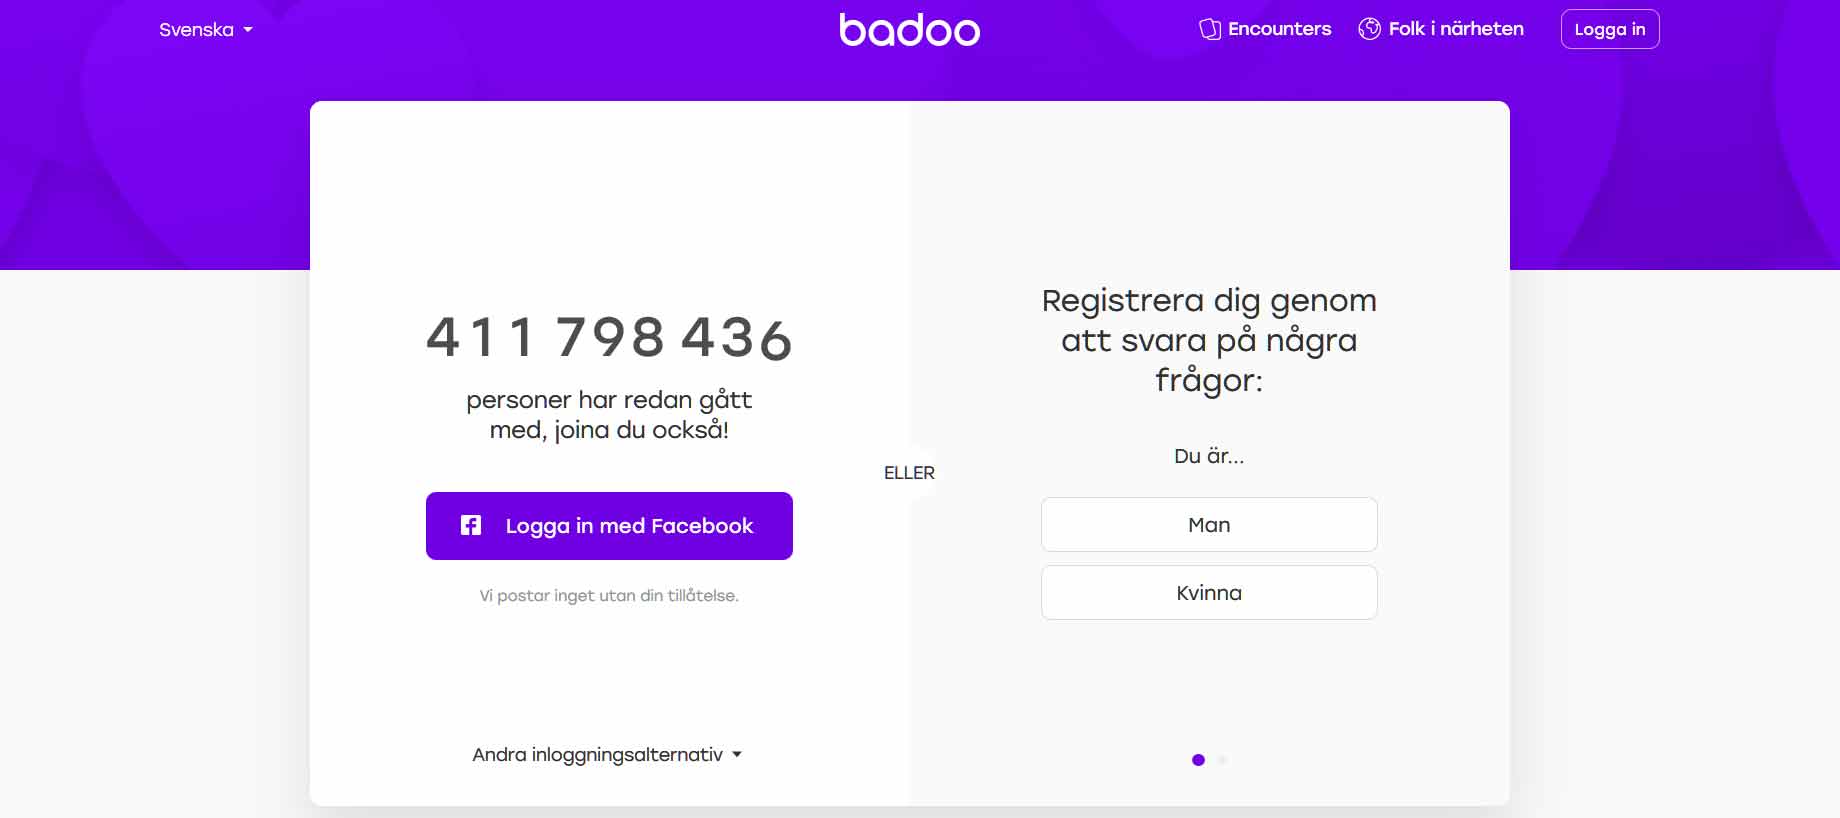 Dejtingsajten Badoo startades 2006 och finns både som mobil app och webbapplikation